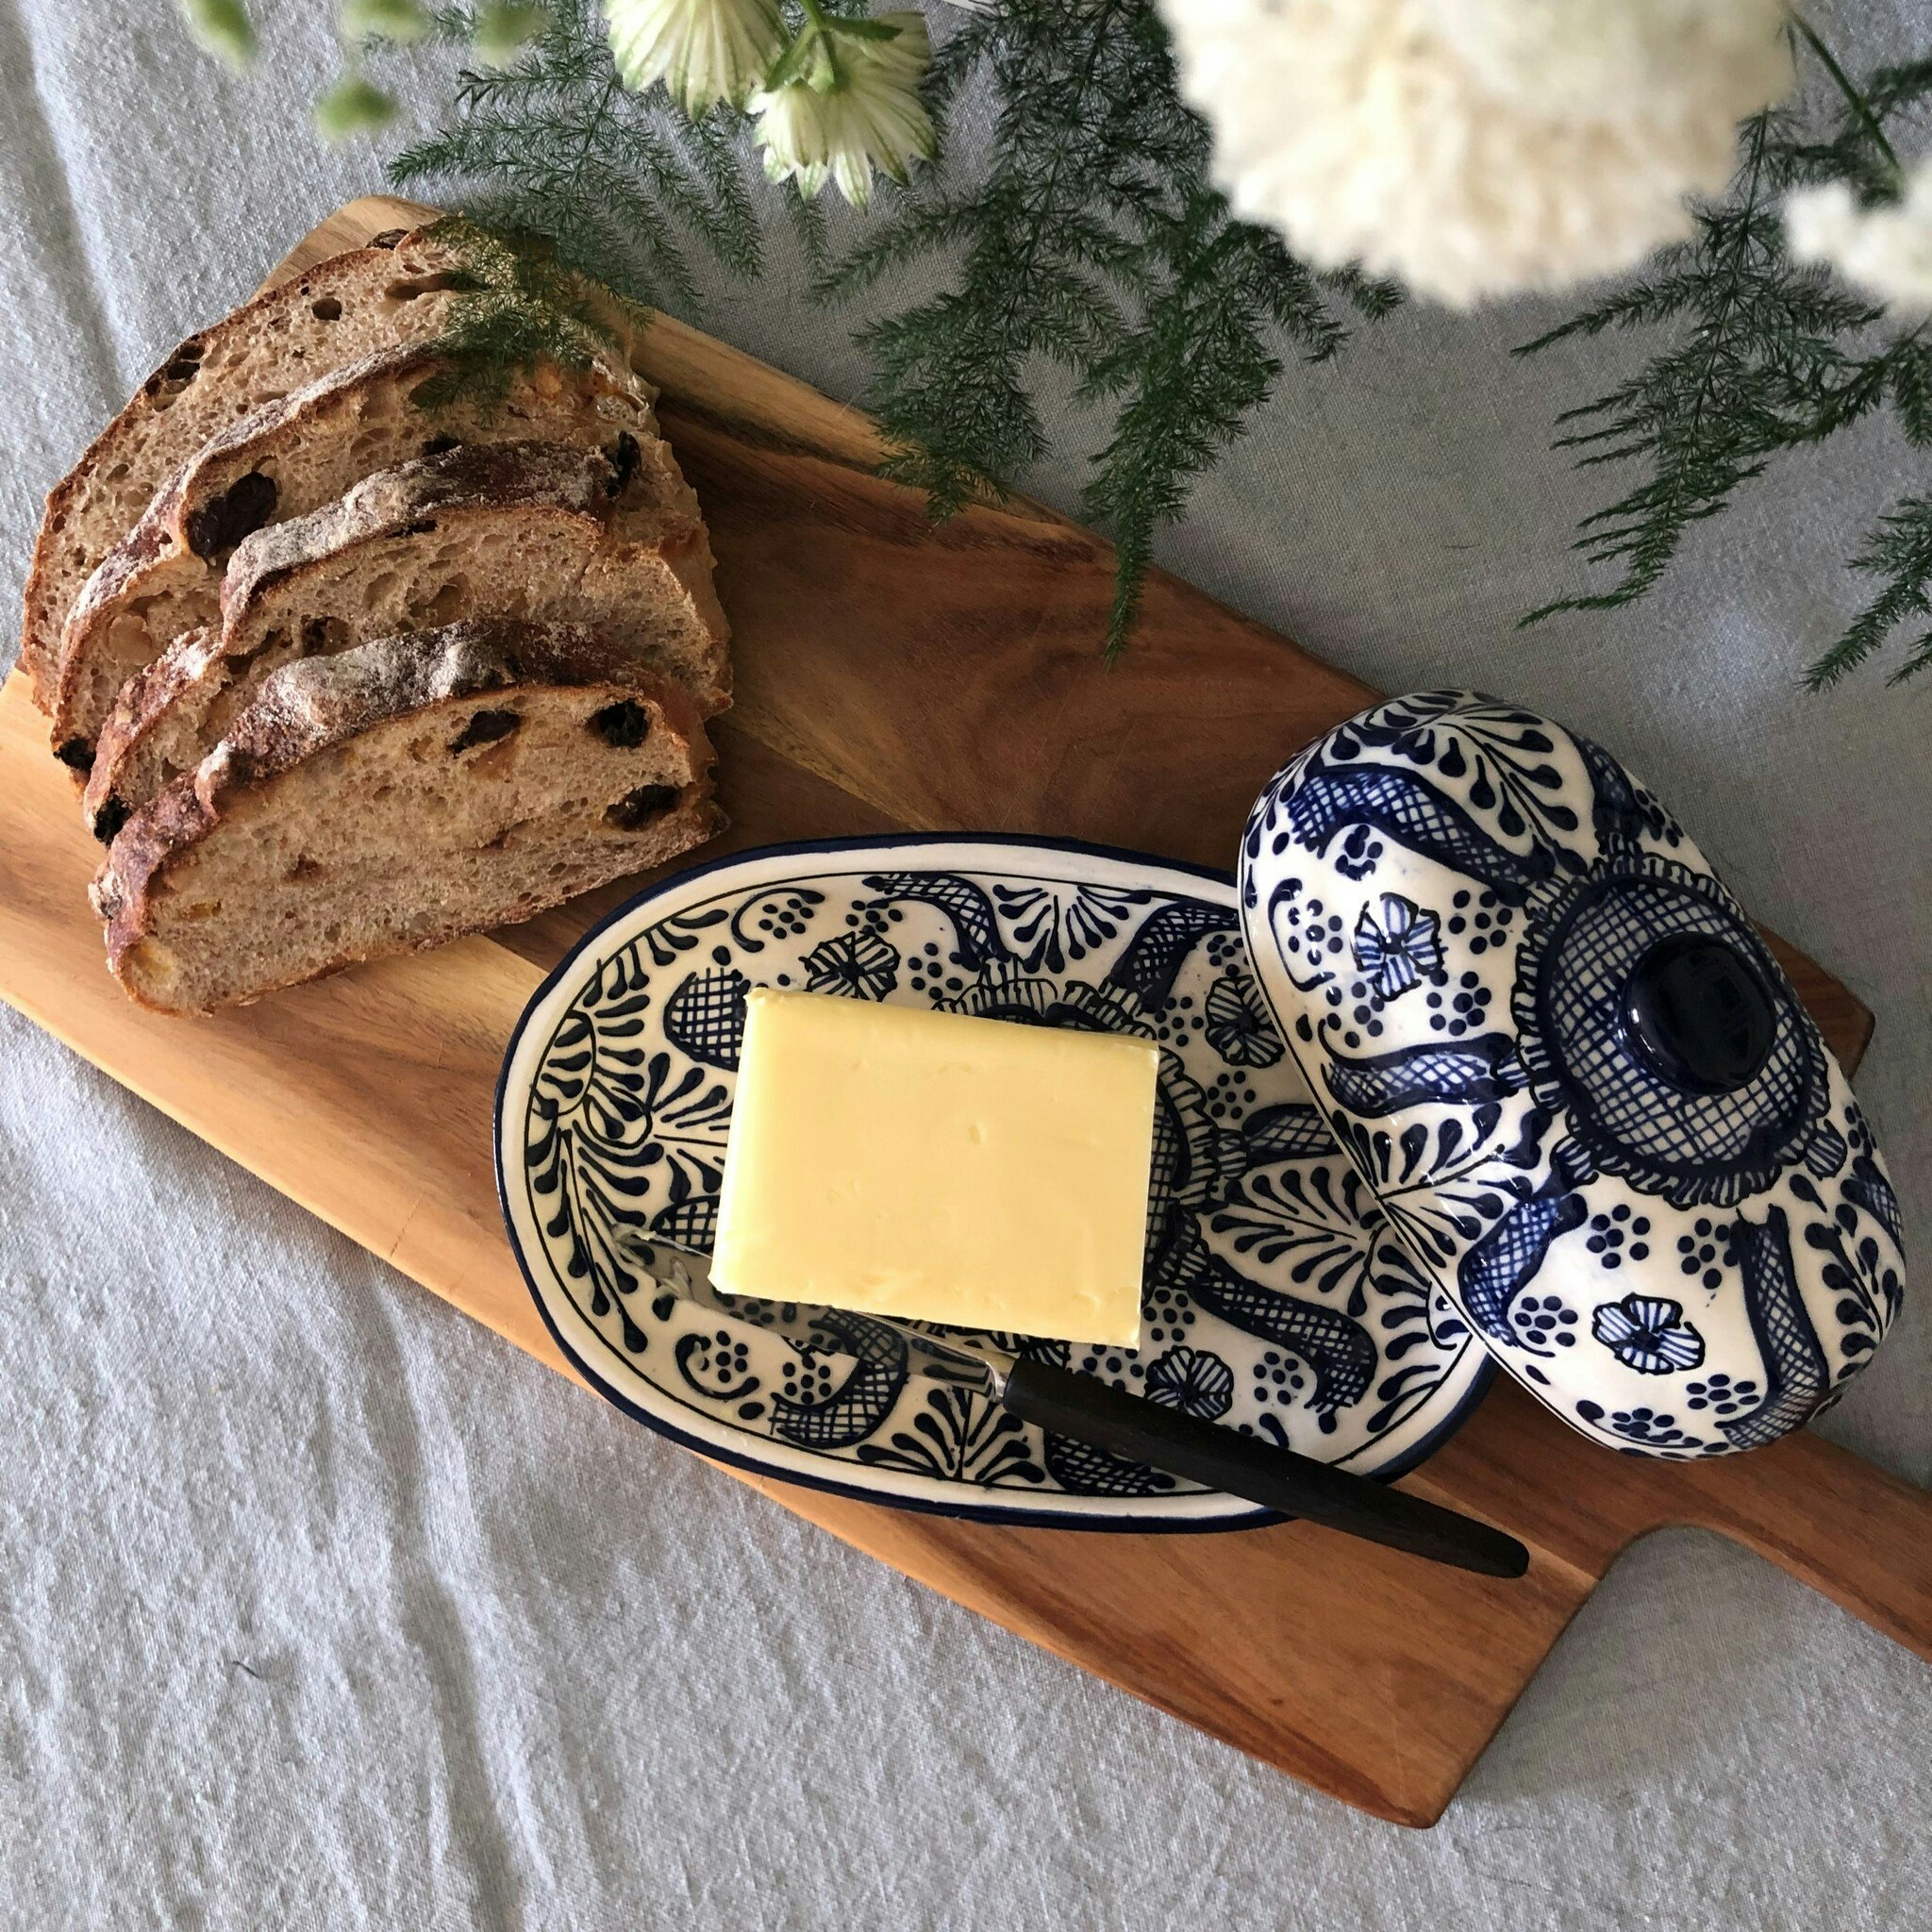 Handmade butter dish